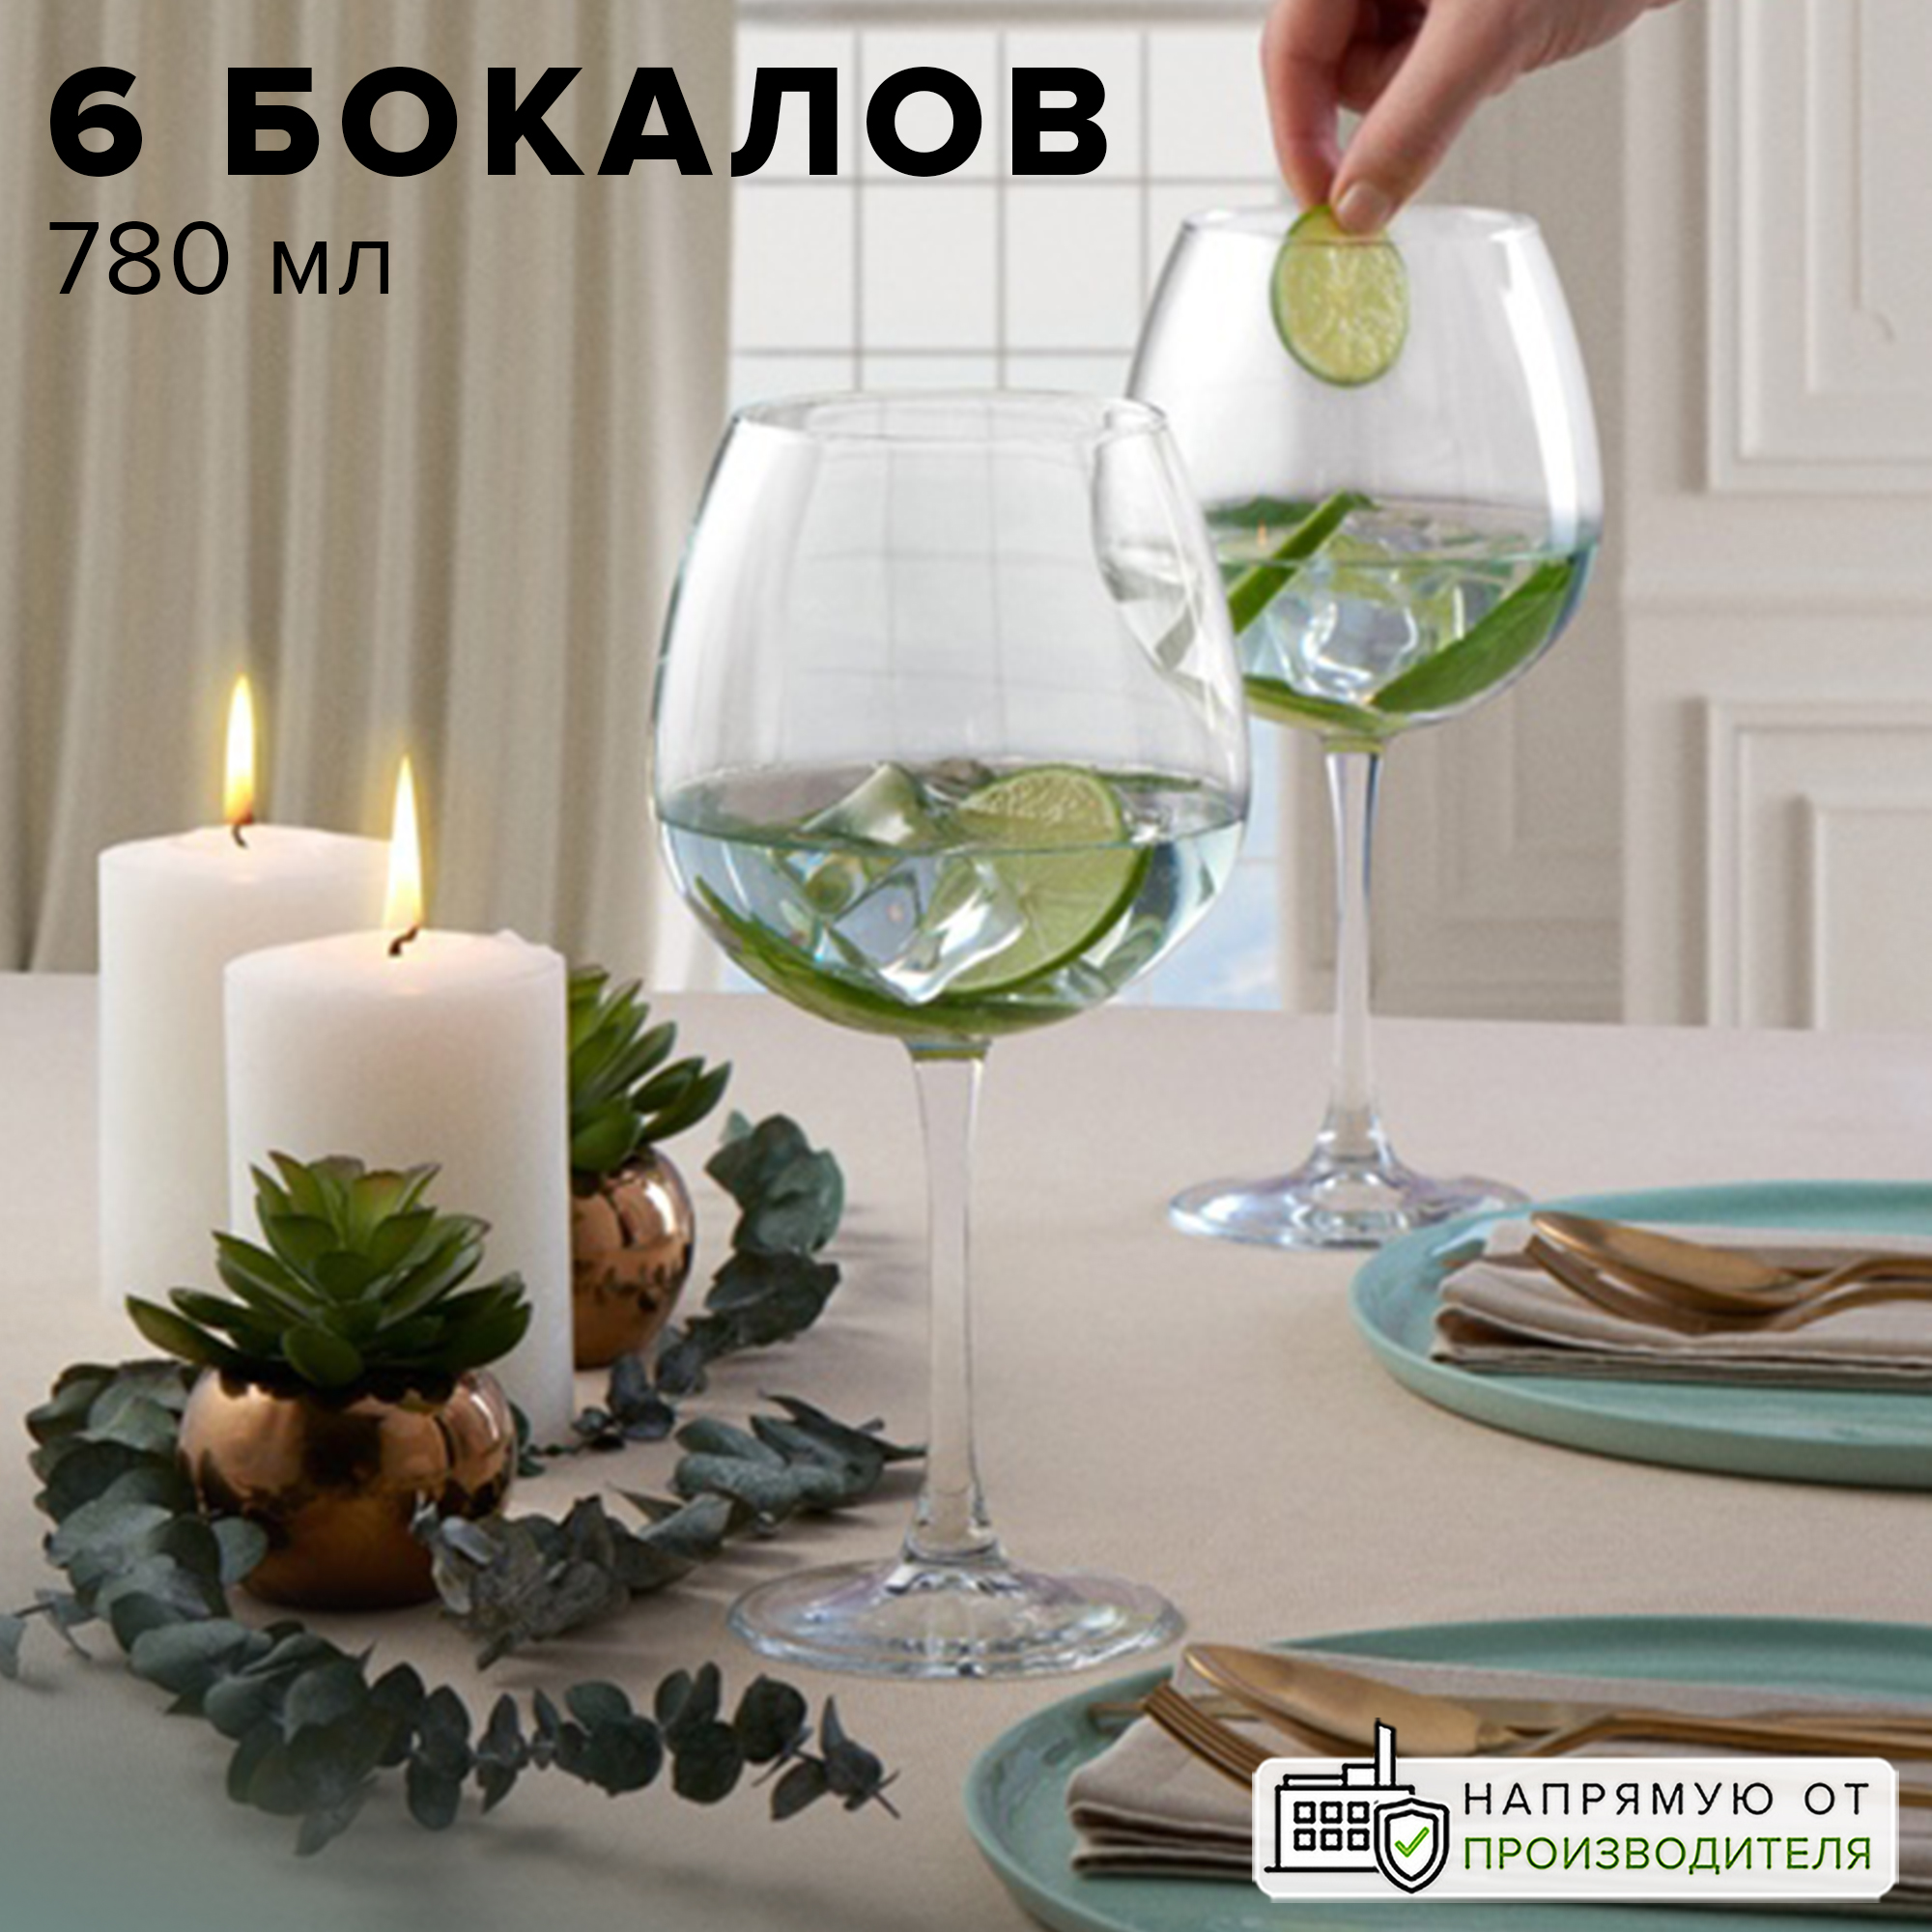 Новогодние свечи, подсвечники купить оптом в Москве - интернет магазин Petit Jardin